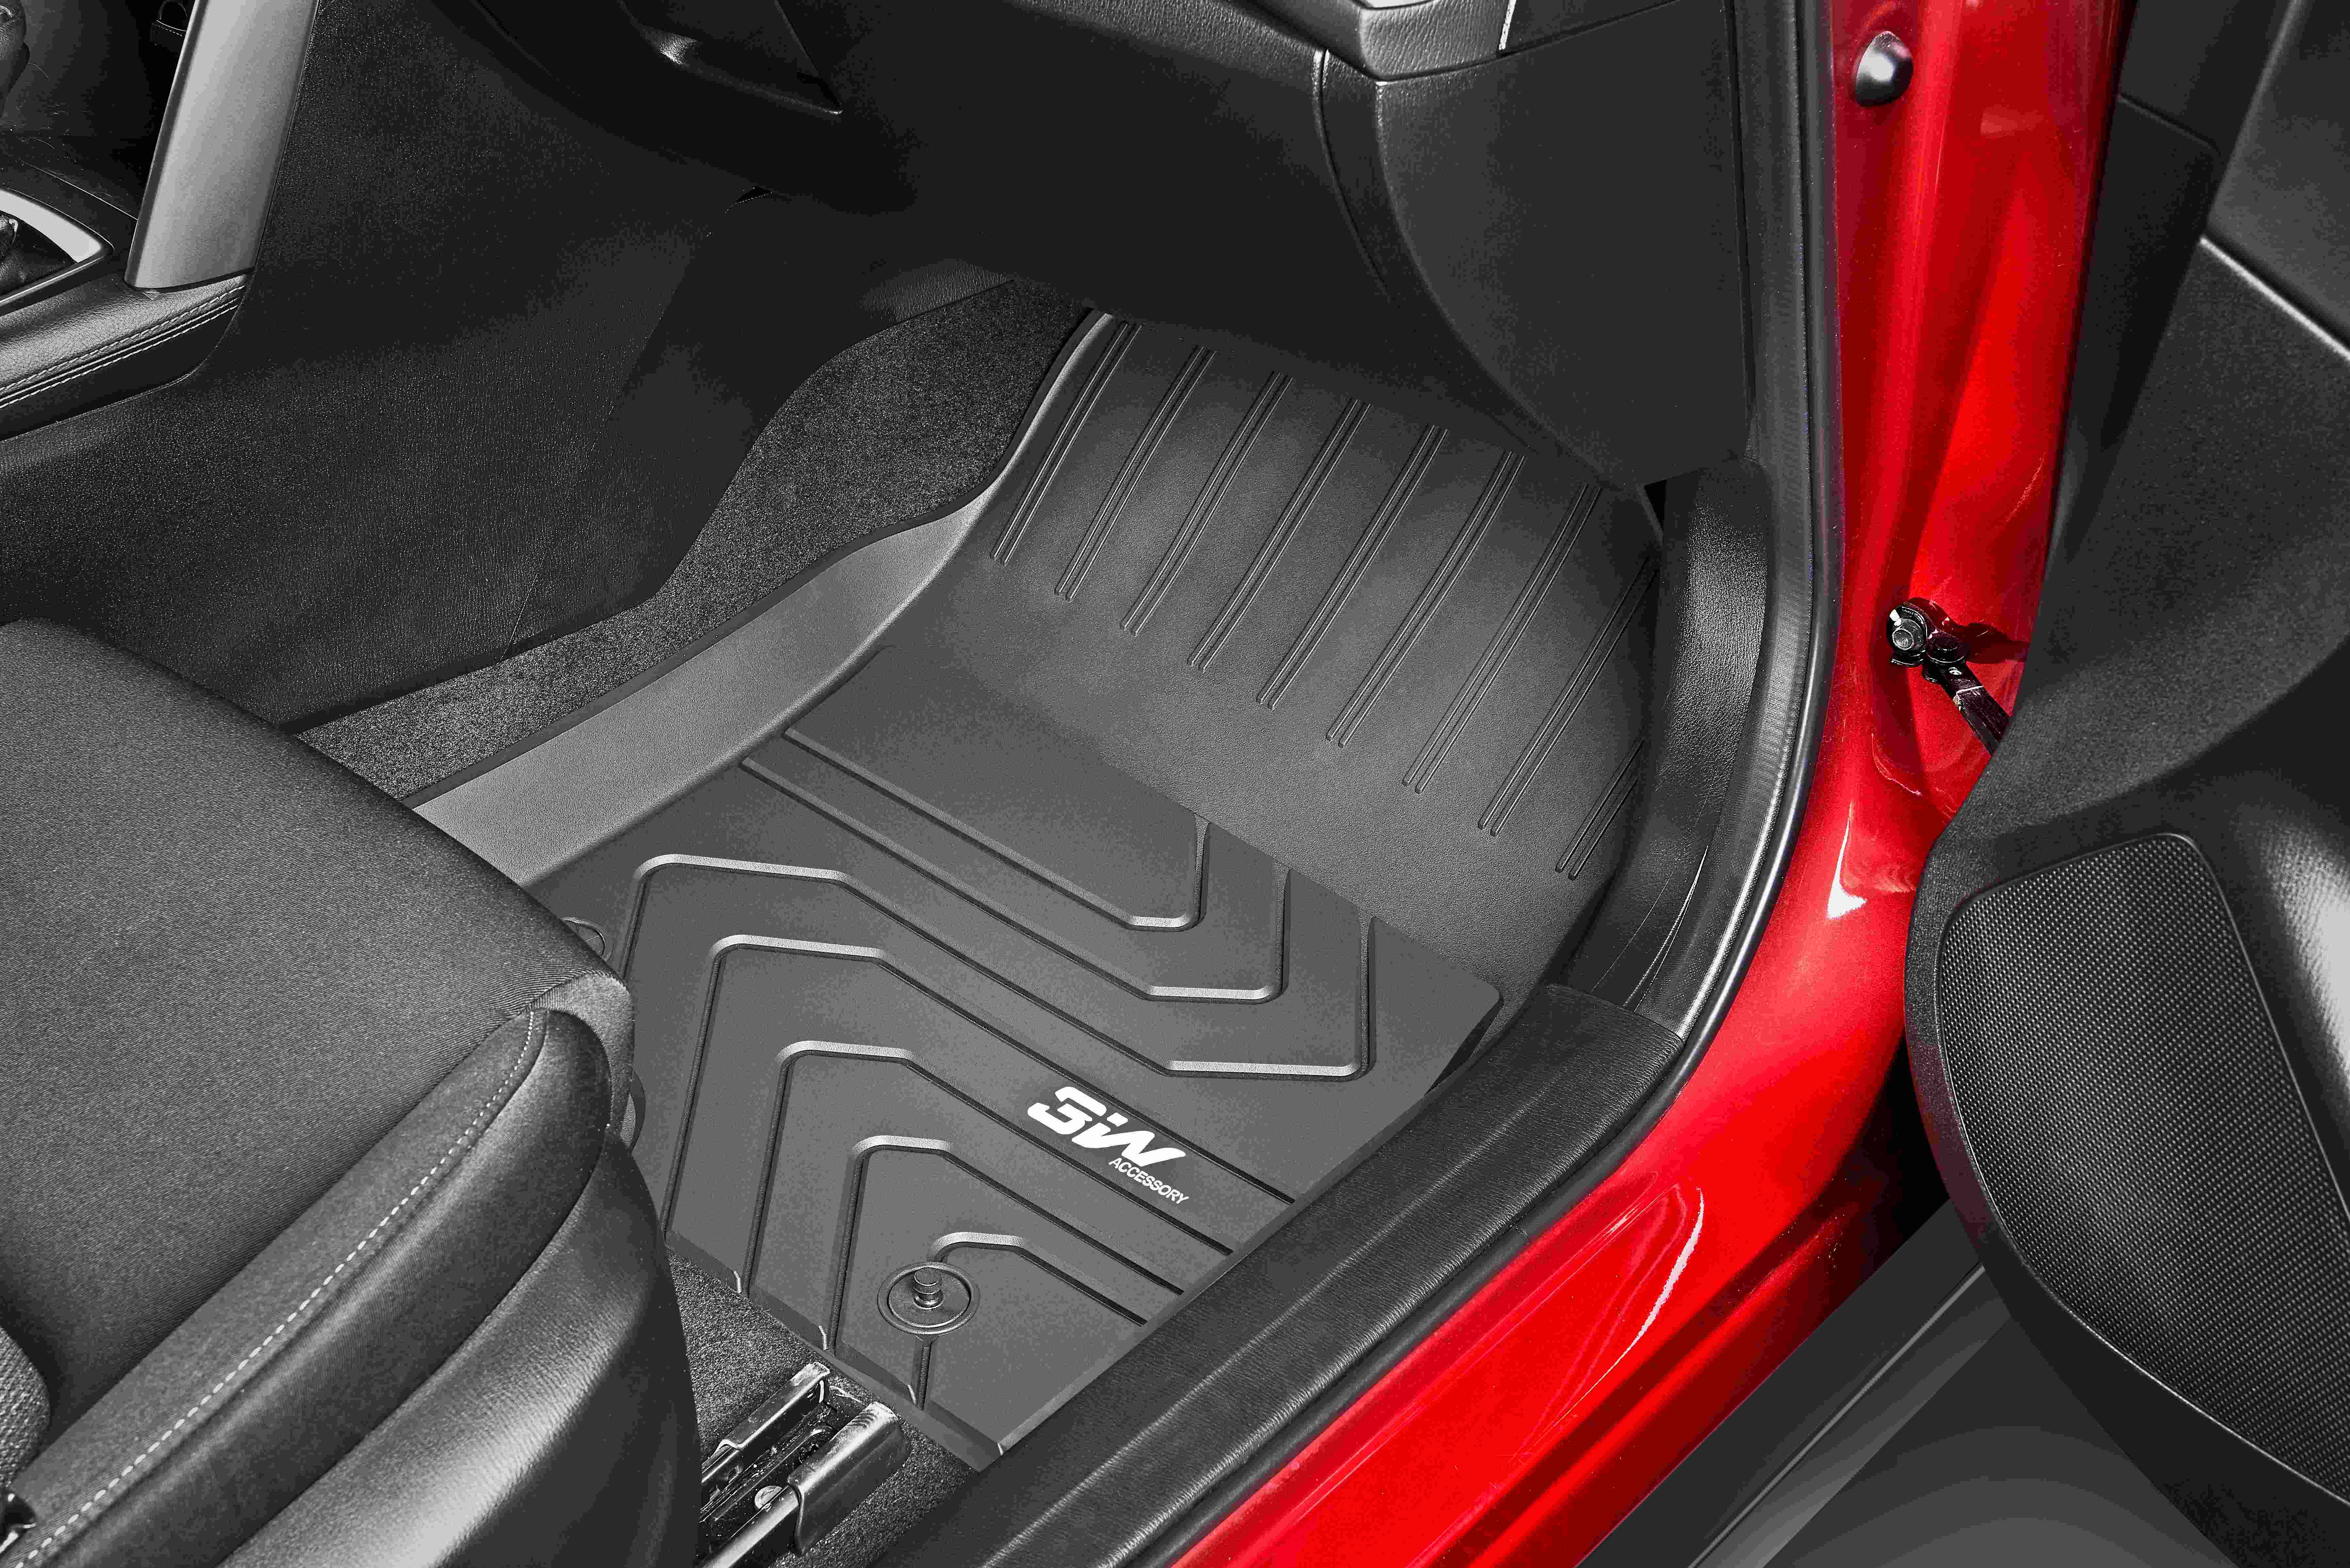 Thảm lót sàn xe ô tô dành cho MAZDA 3 2016 đến 2020 nhãn hiệu Macsim 3W - chất liệu nhựa TPE đúc khuôn cao cấp - màu đen